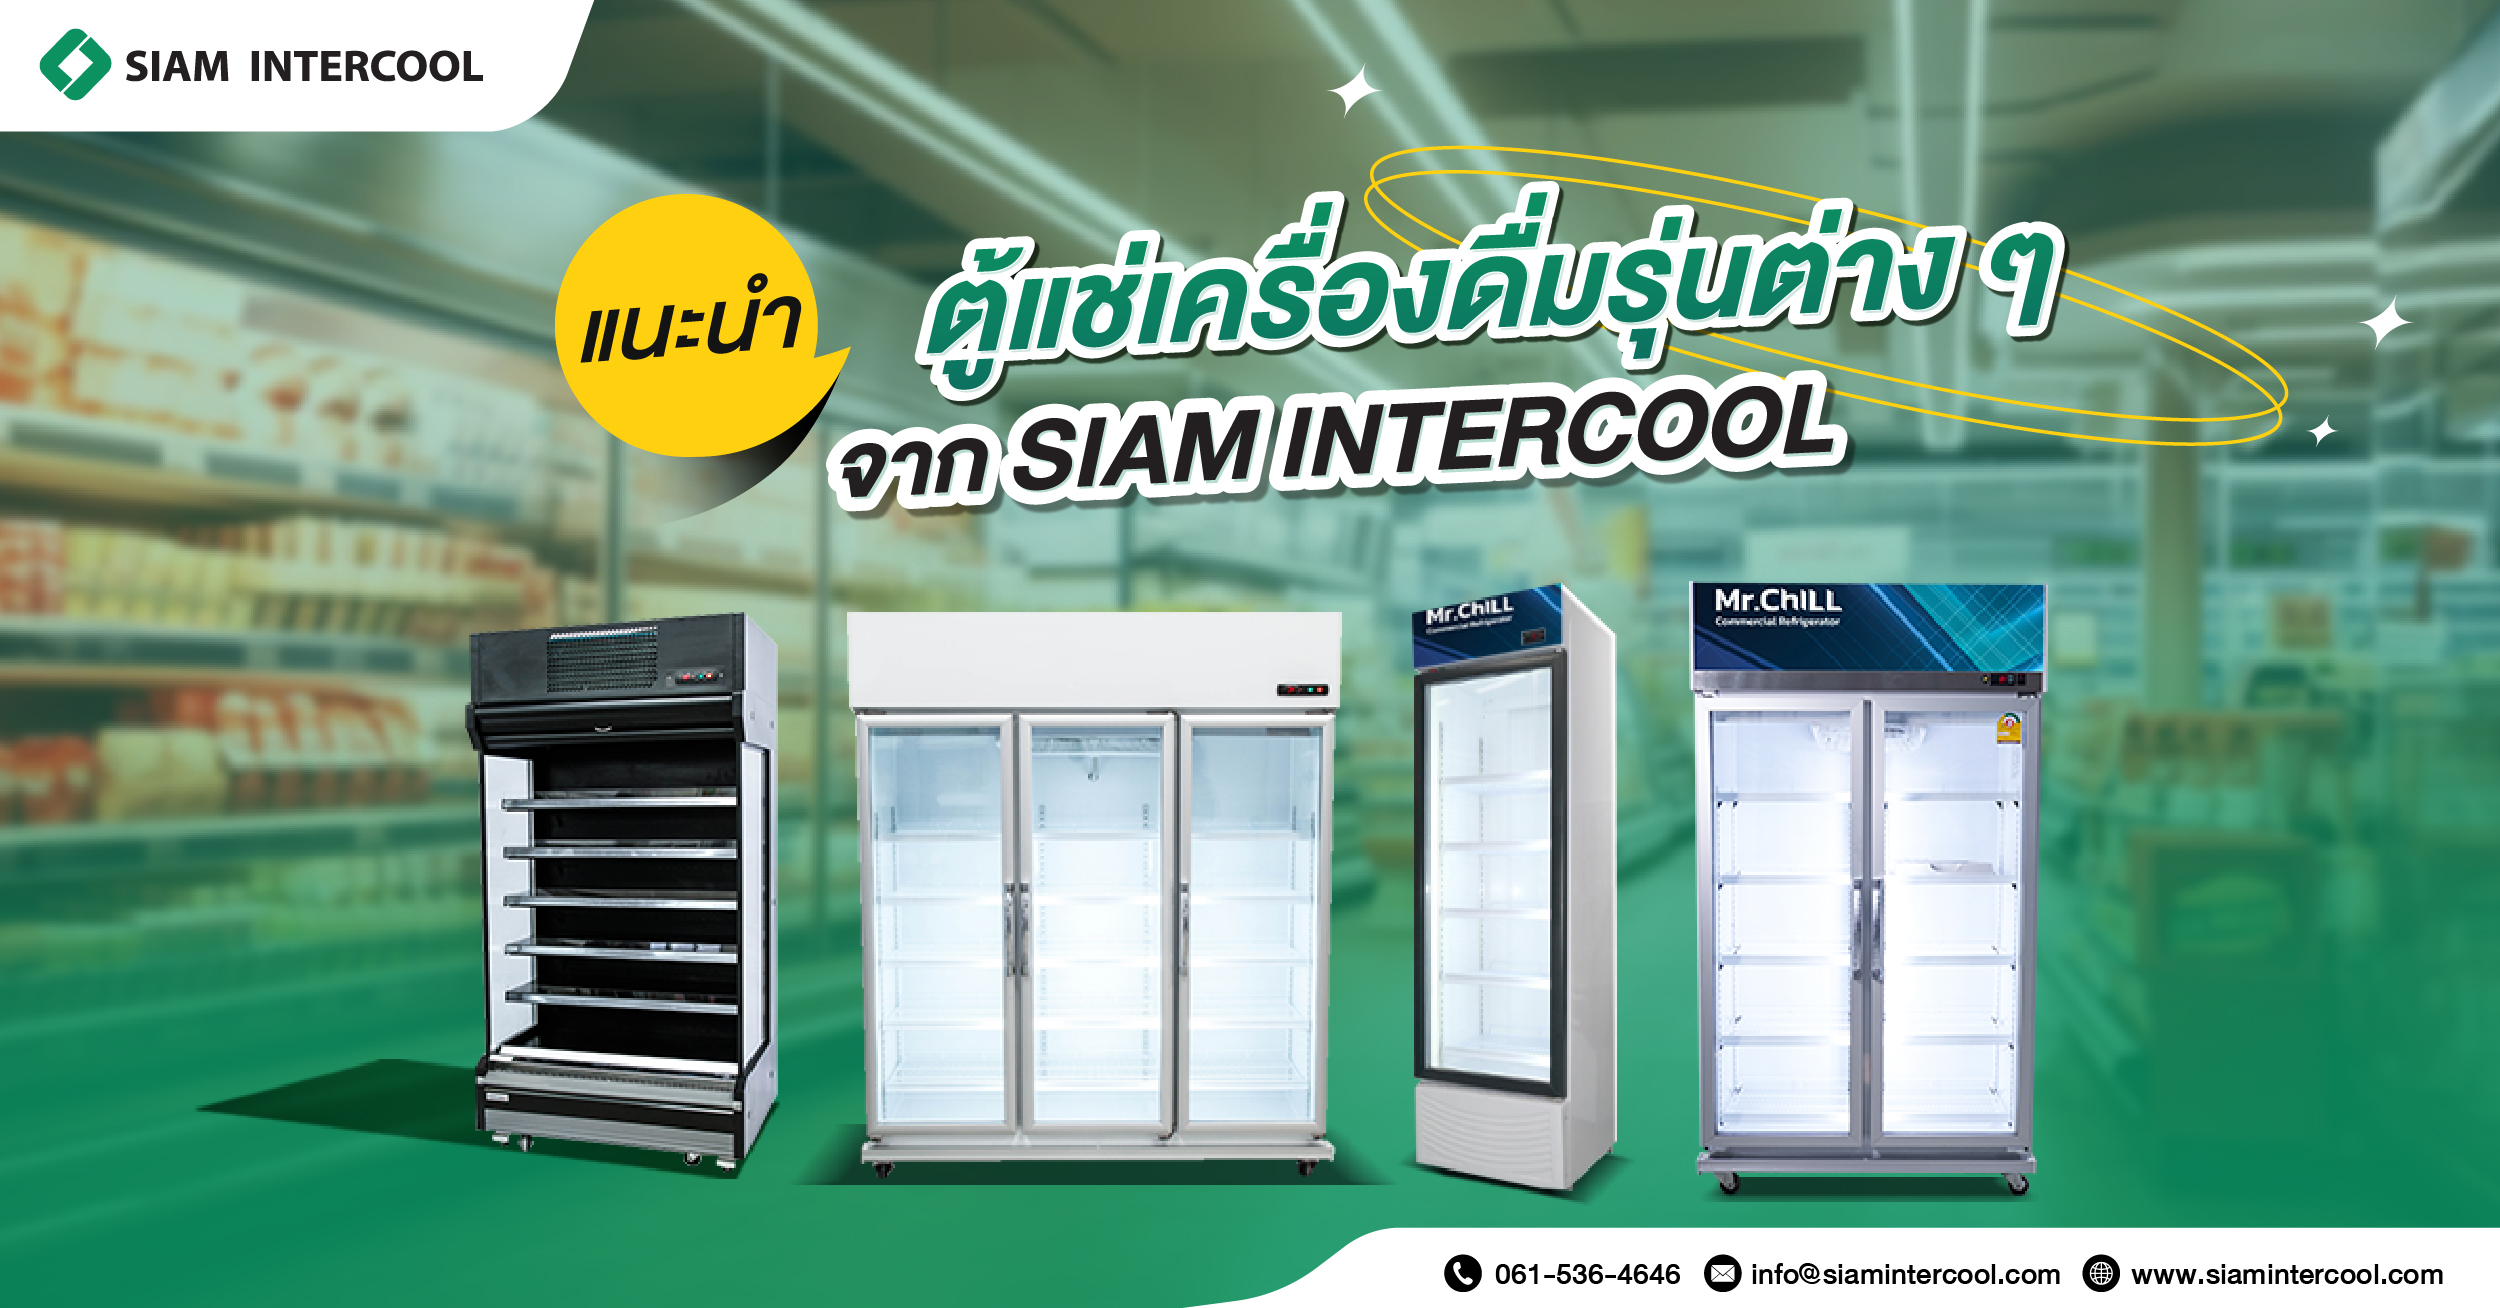 แนะนำตู้แช่เครื่องดื่มรุ่นต่าง ๆ จาก SIAM INTERCOOL